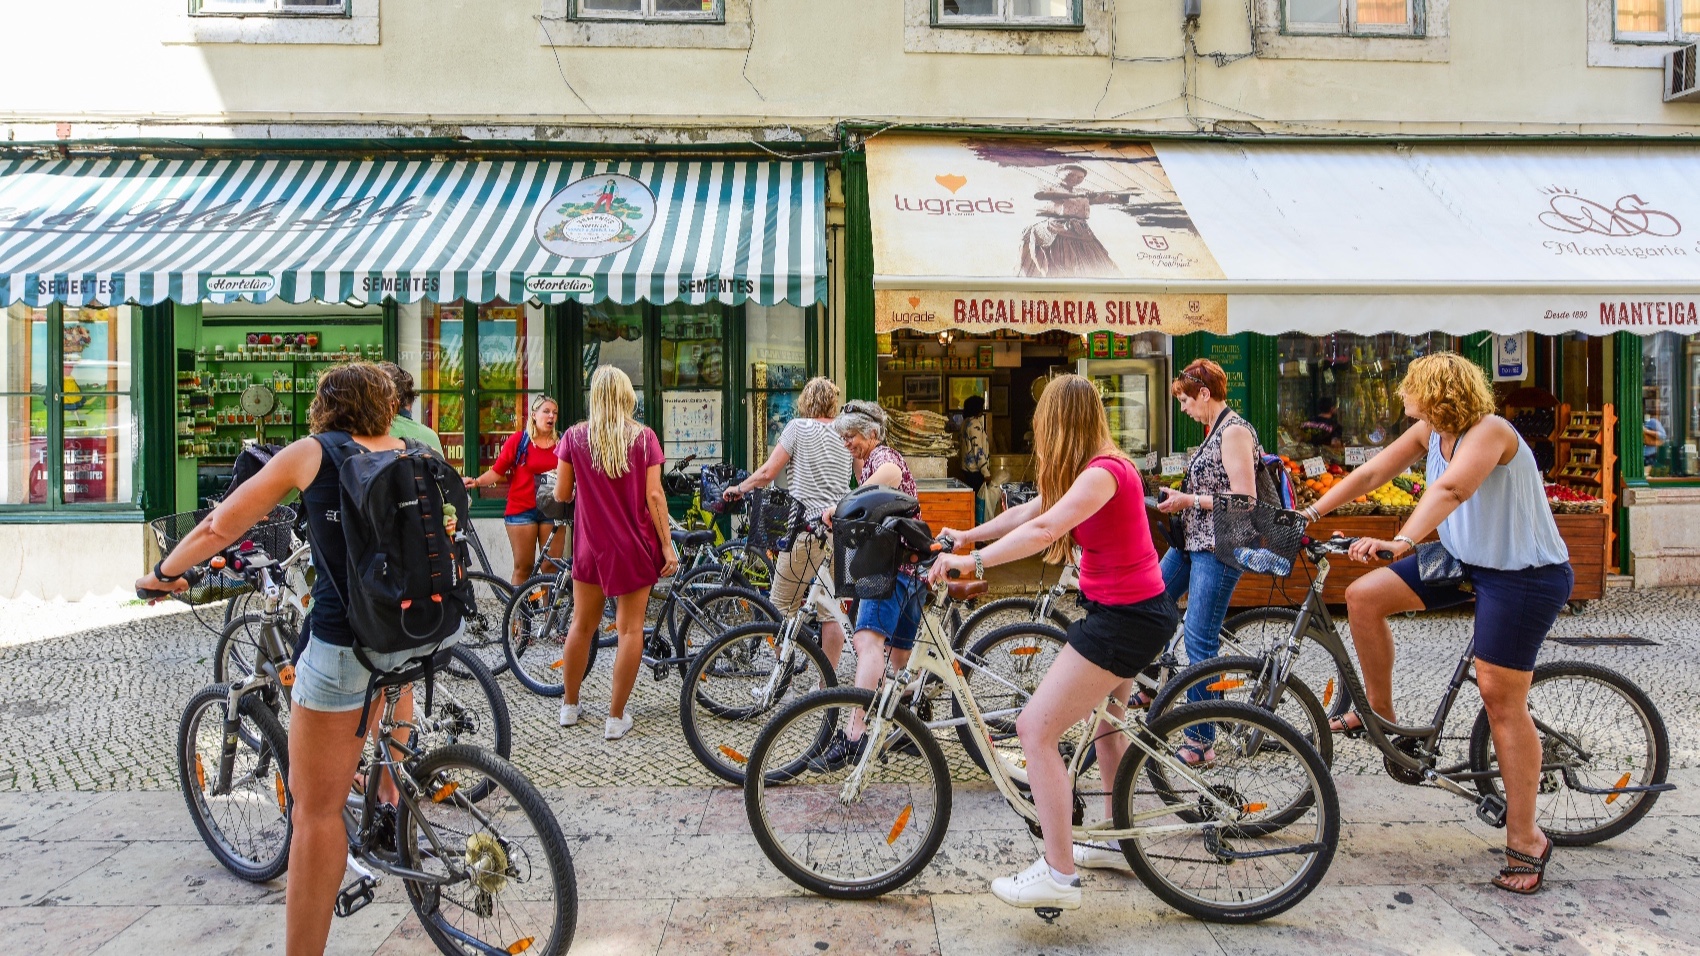 Lisbon by bike with Alentejo Cork Hike licor shop